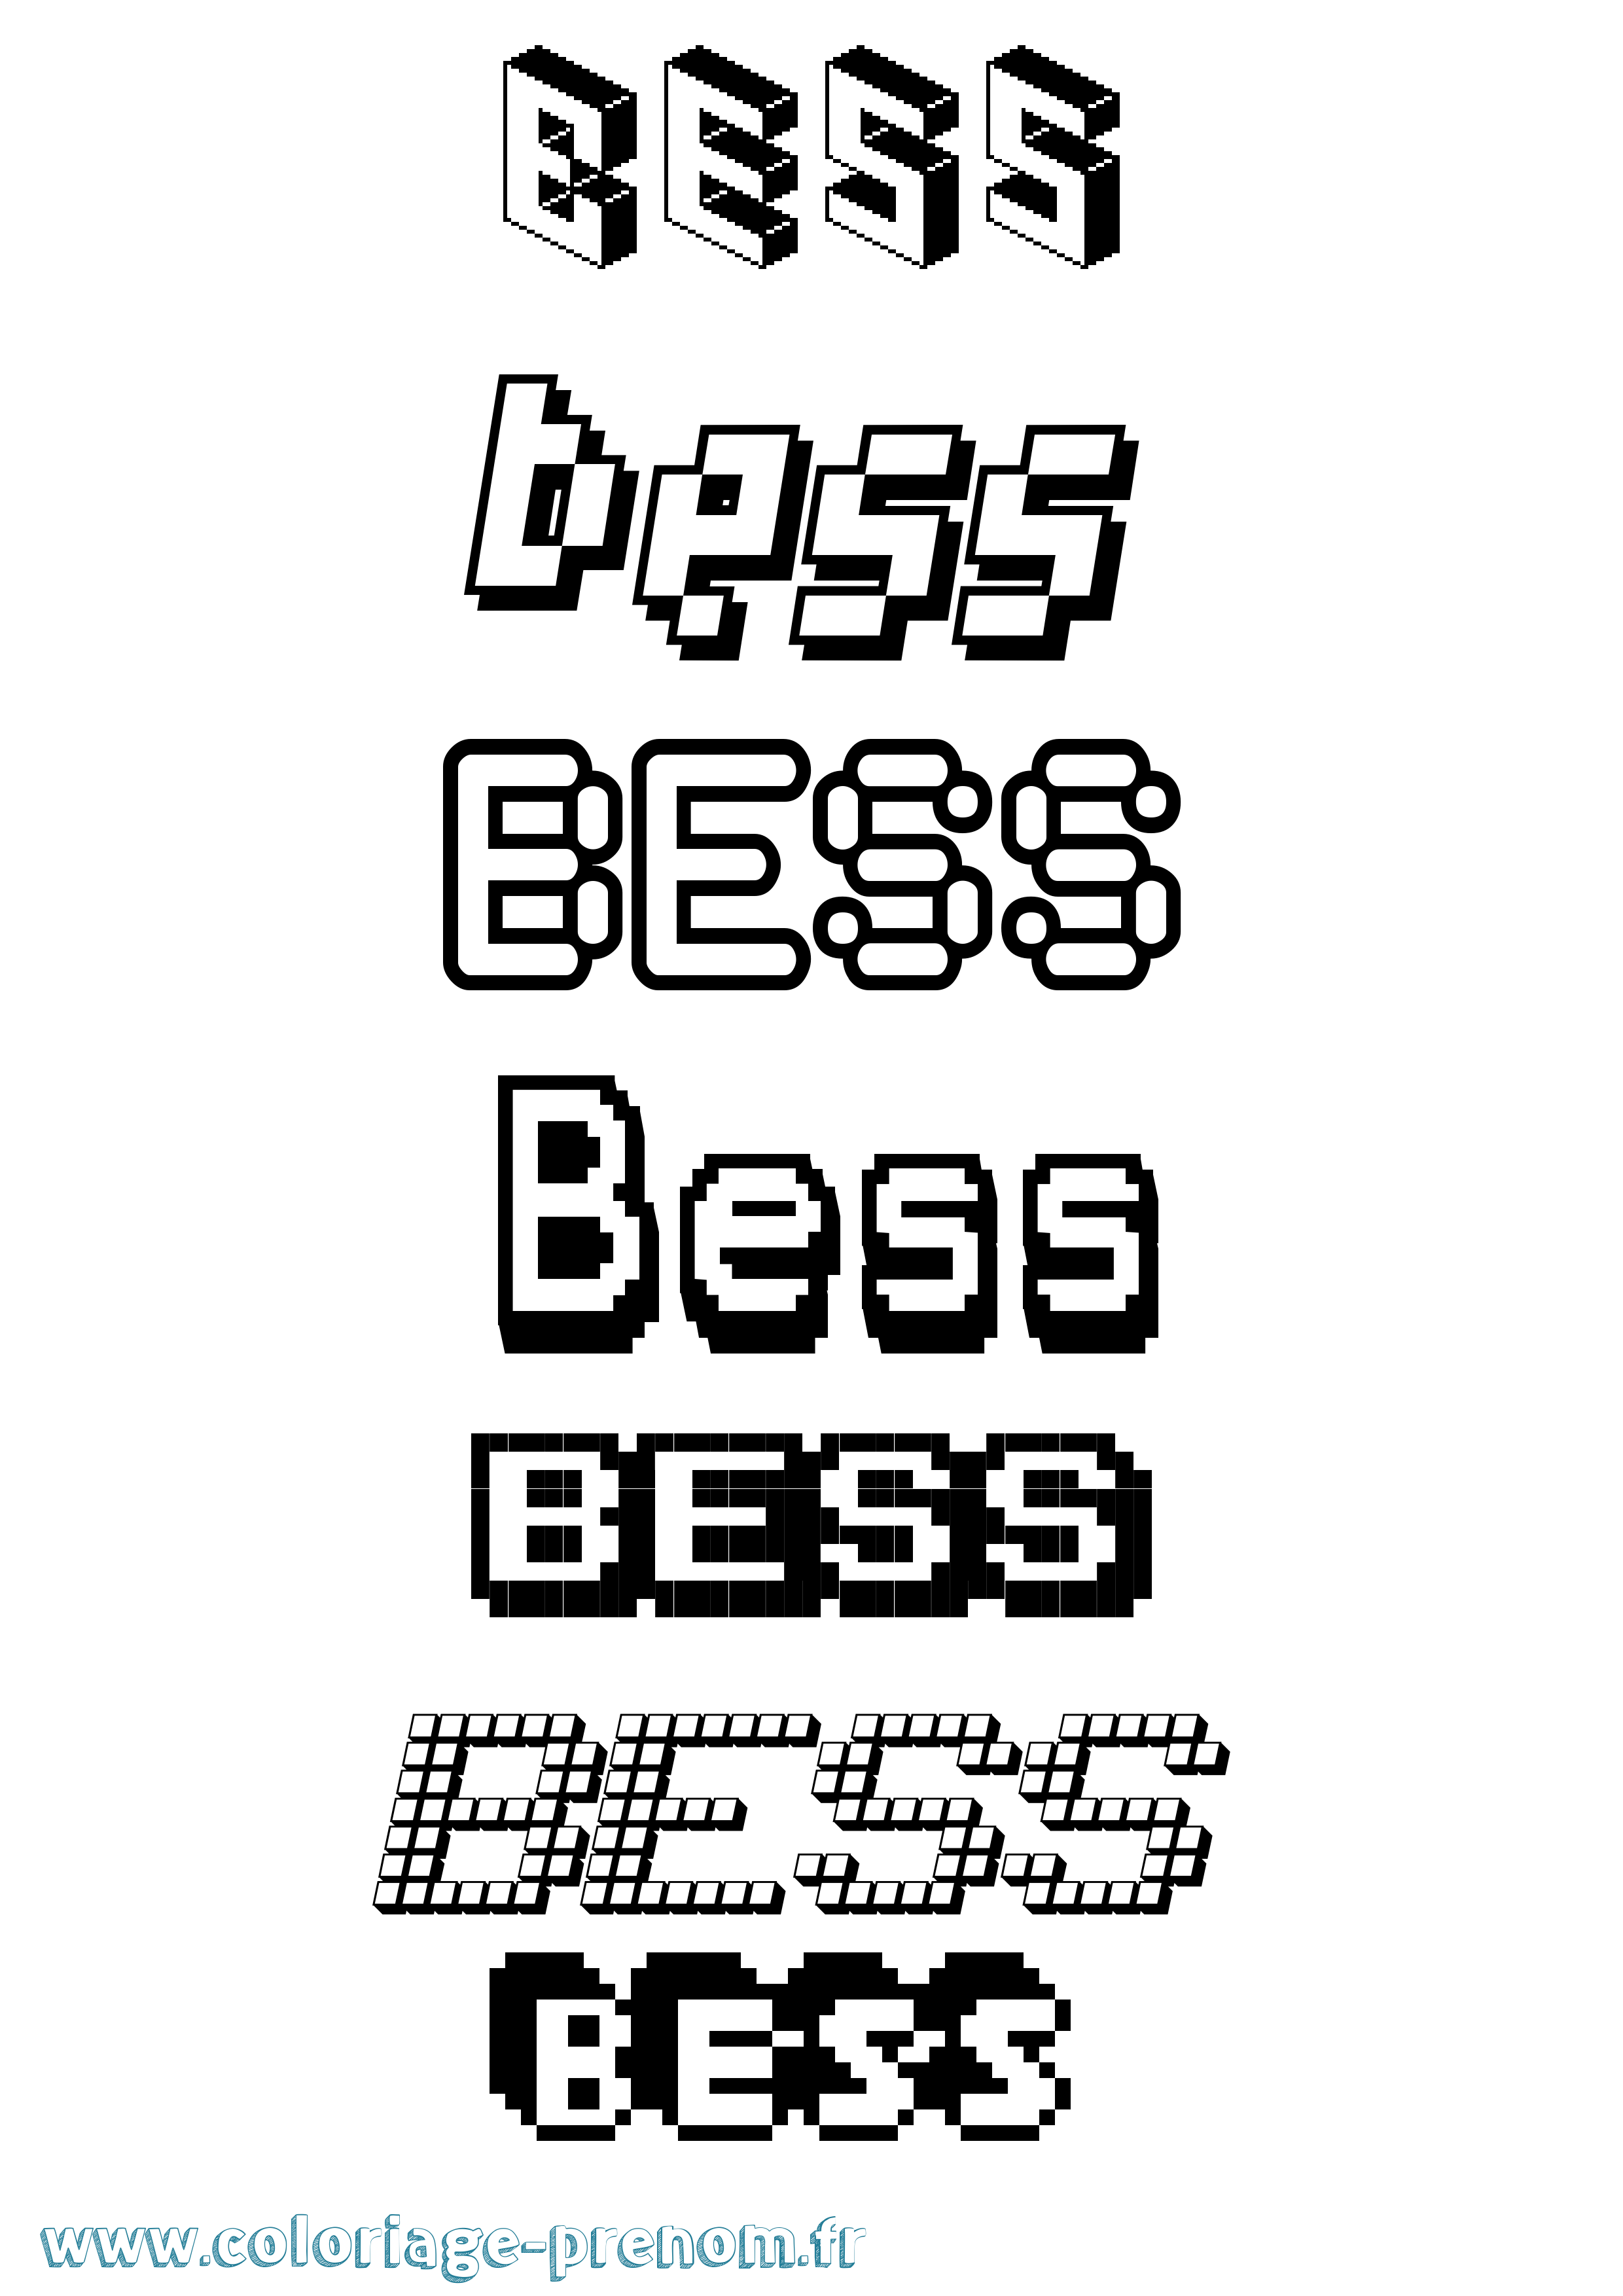 Coloriage prénom Bess Pixel